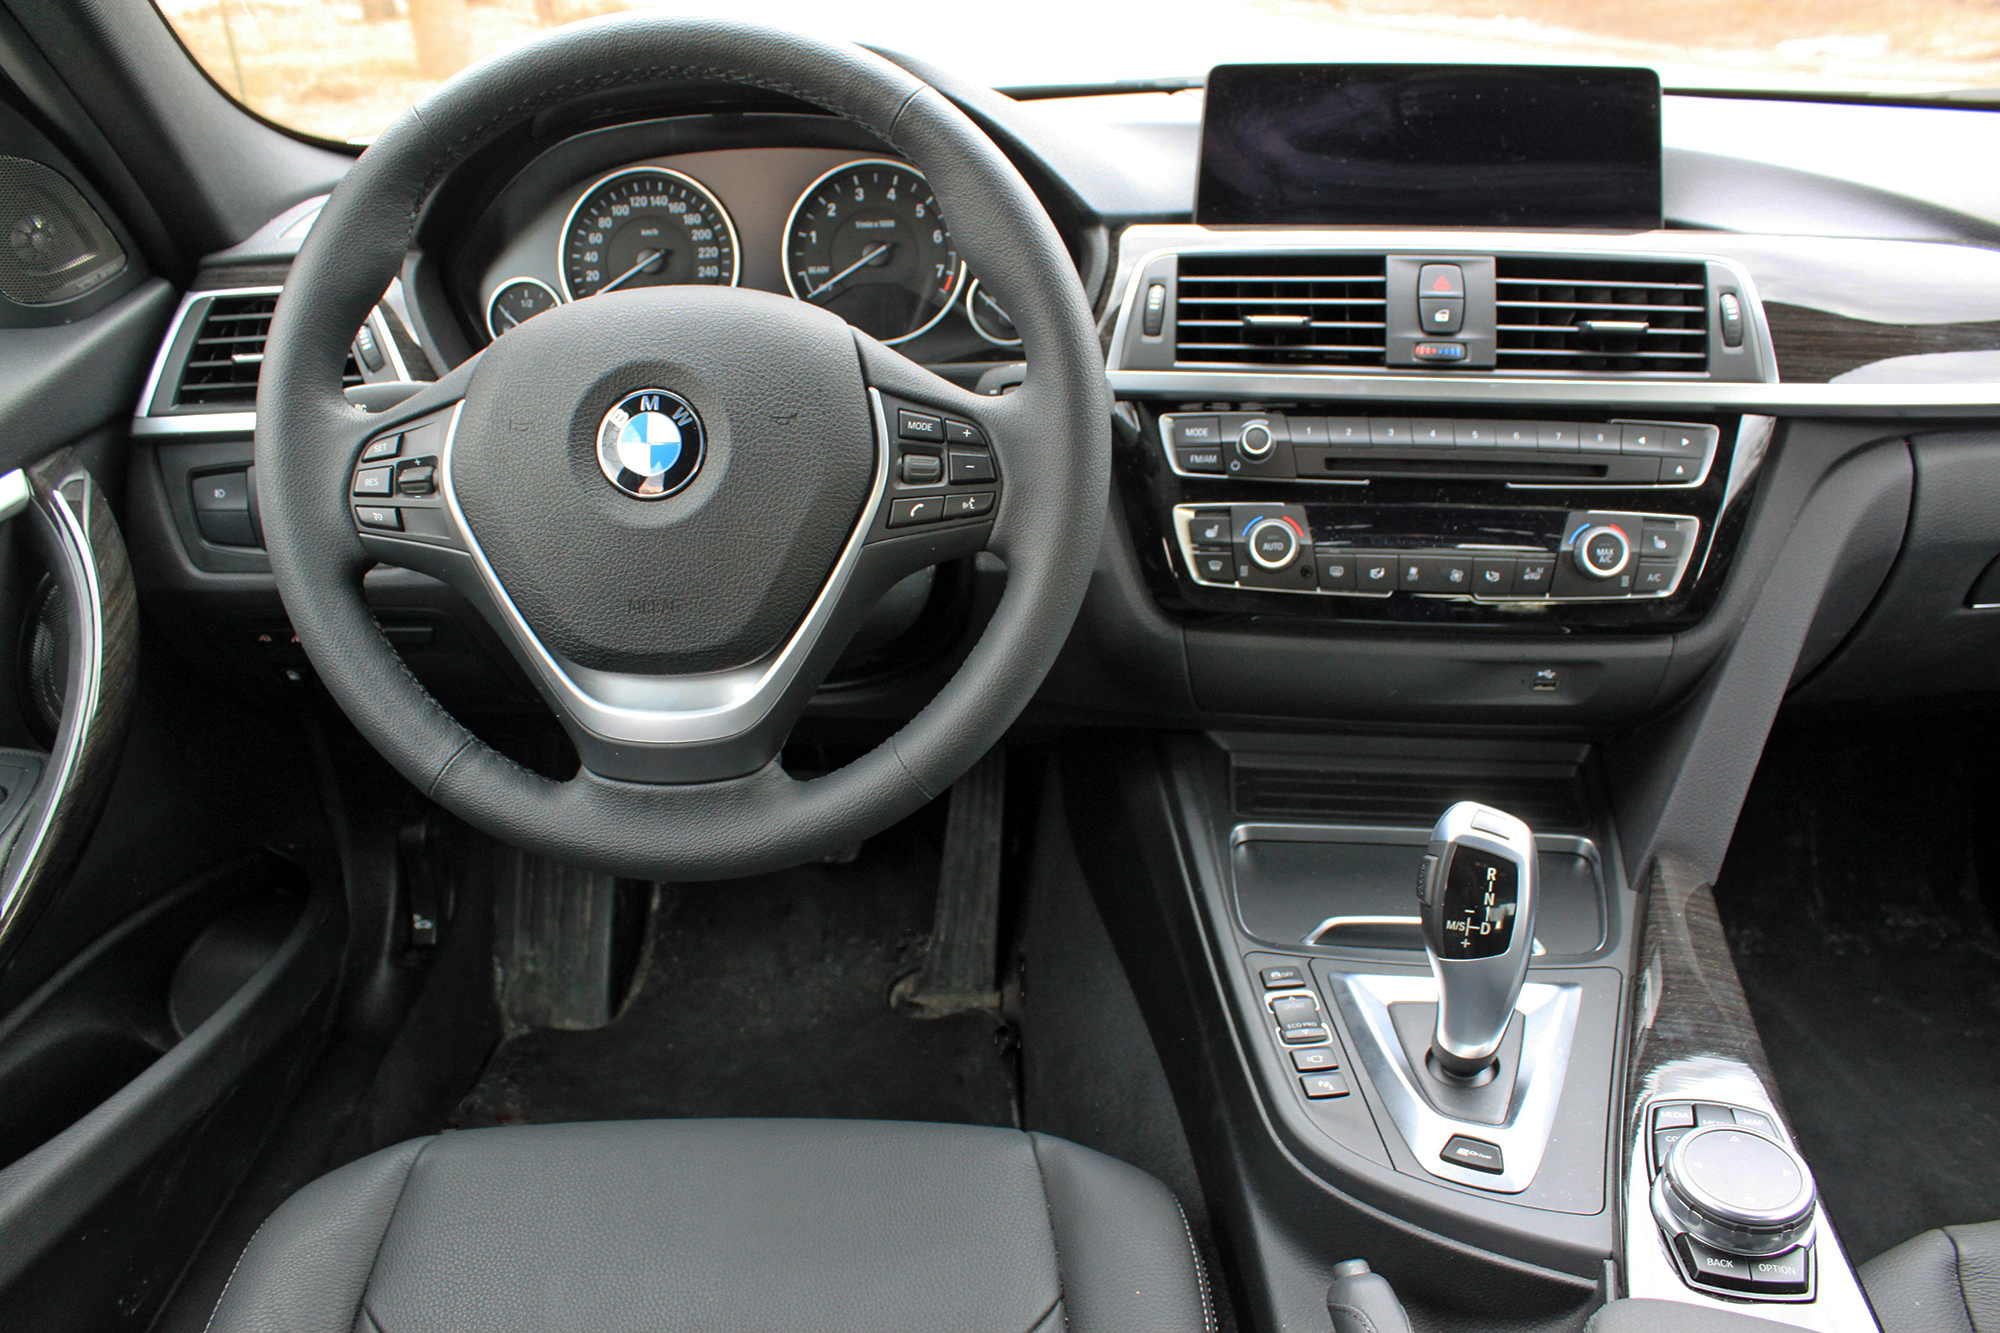 Test Drive: 2017 BMW 330e- vicariousmag.com